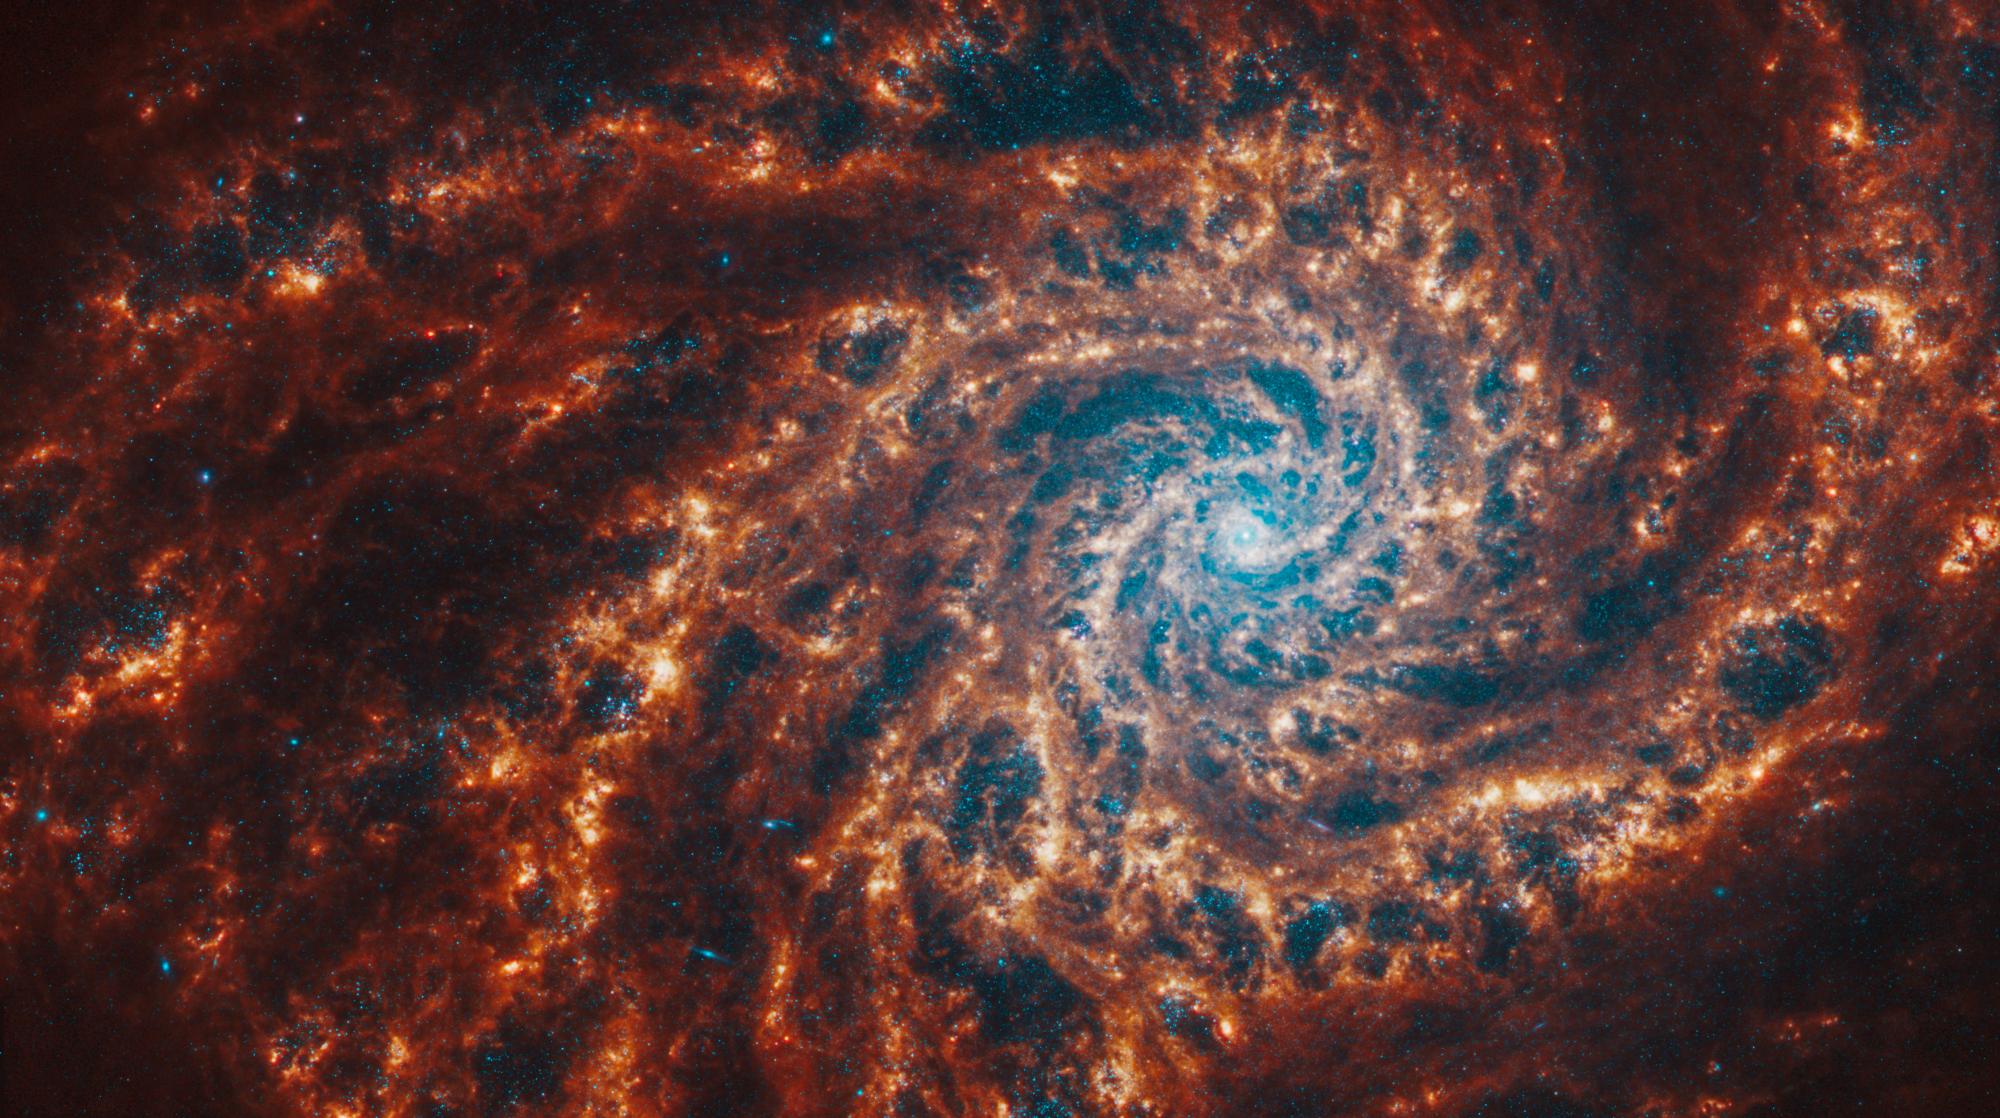 Imagen frontal capturada por el telescopio espacial Webb de la galaxia espiral NGC 4254, resaltando su estructura y detalles con una vista cercana y detallada.